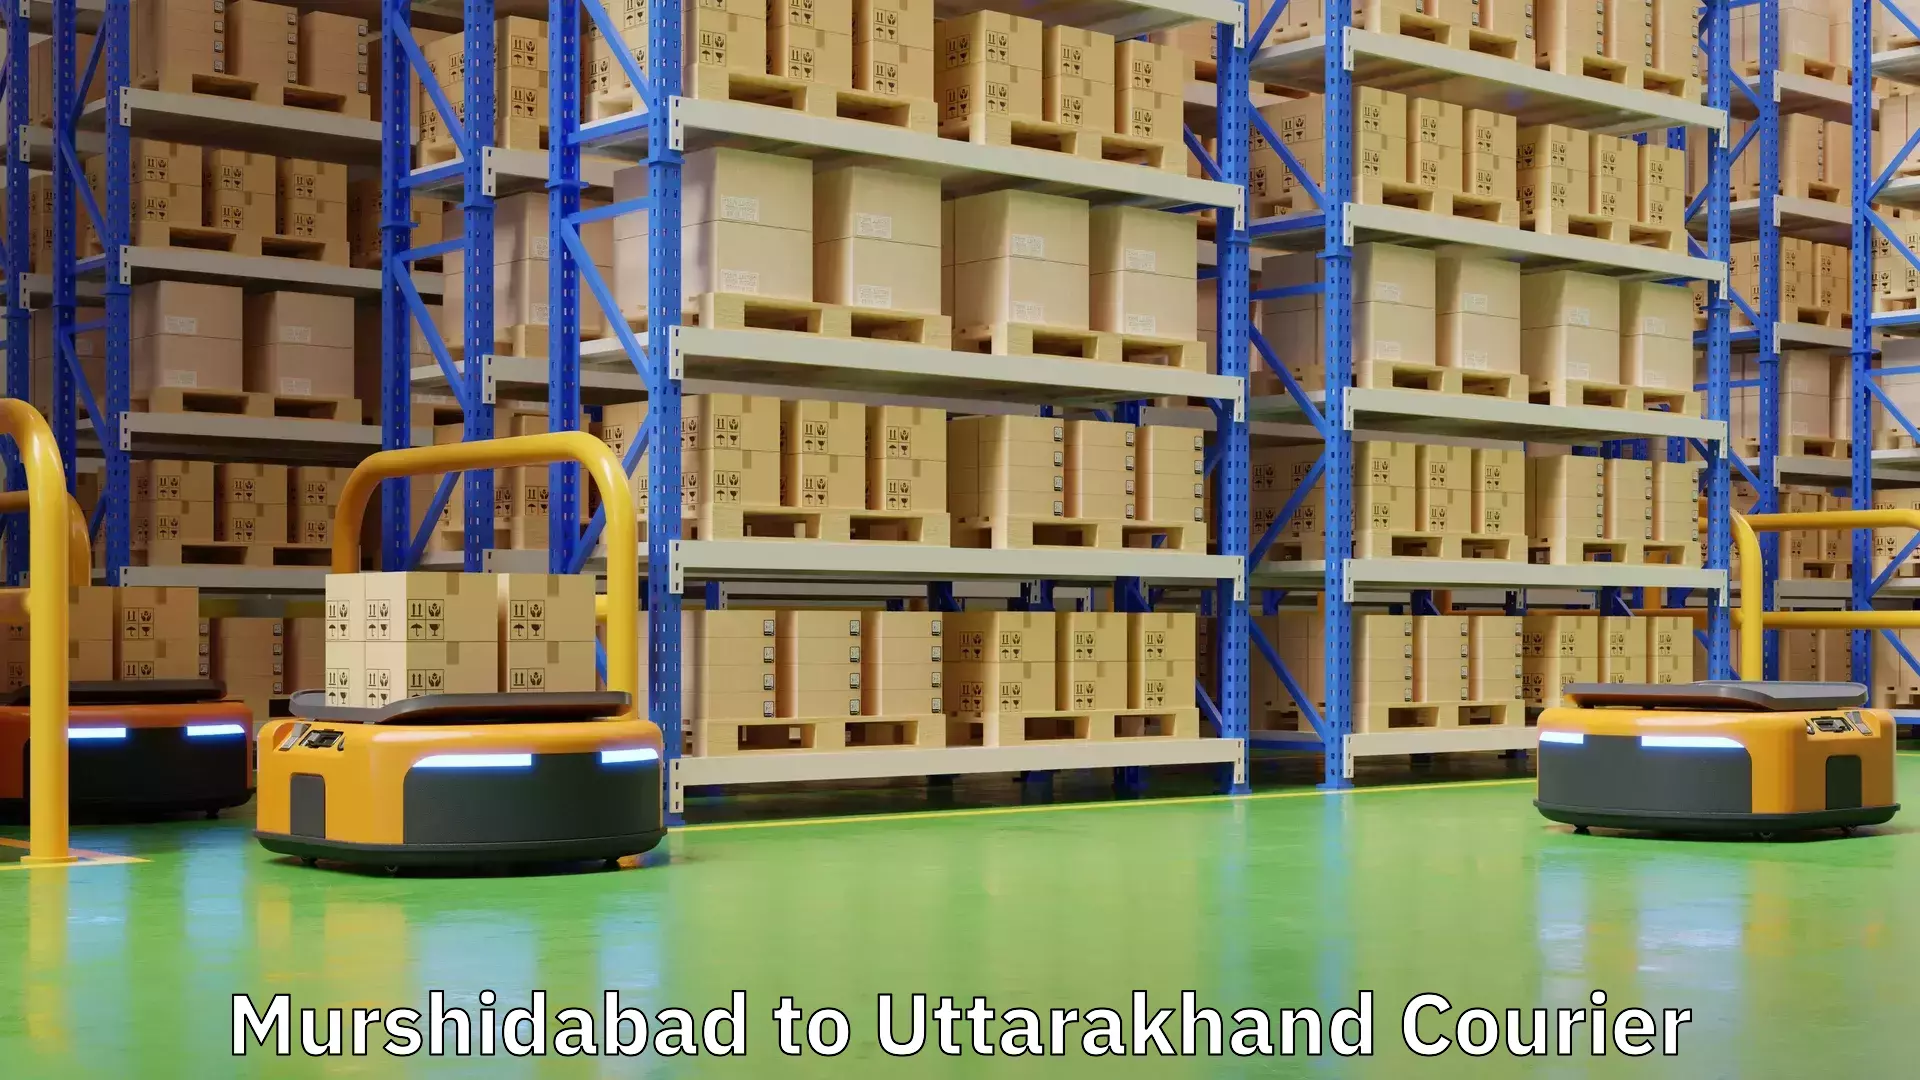 Professional courier services Murshidabad to Uttarakhand